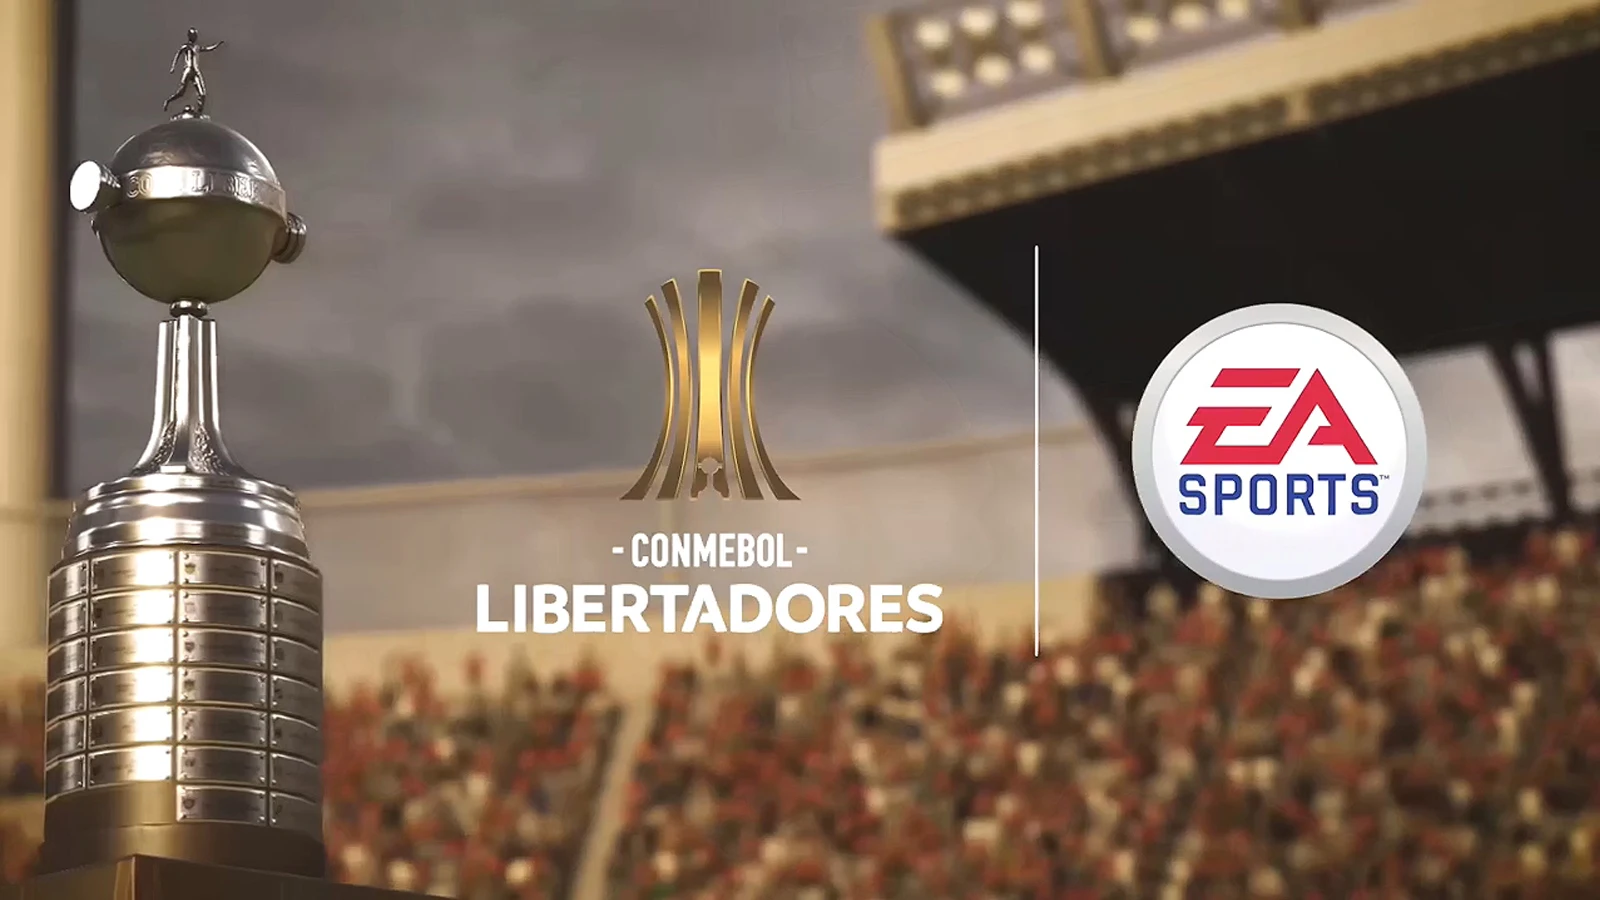 《FIFA 20》将更新南美解放者杯免费DLC，明年3月登陆PS4、XBOX ONE、PC平台